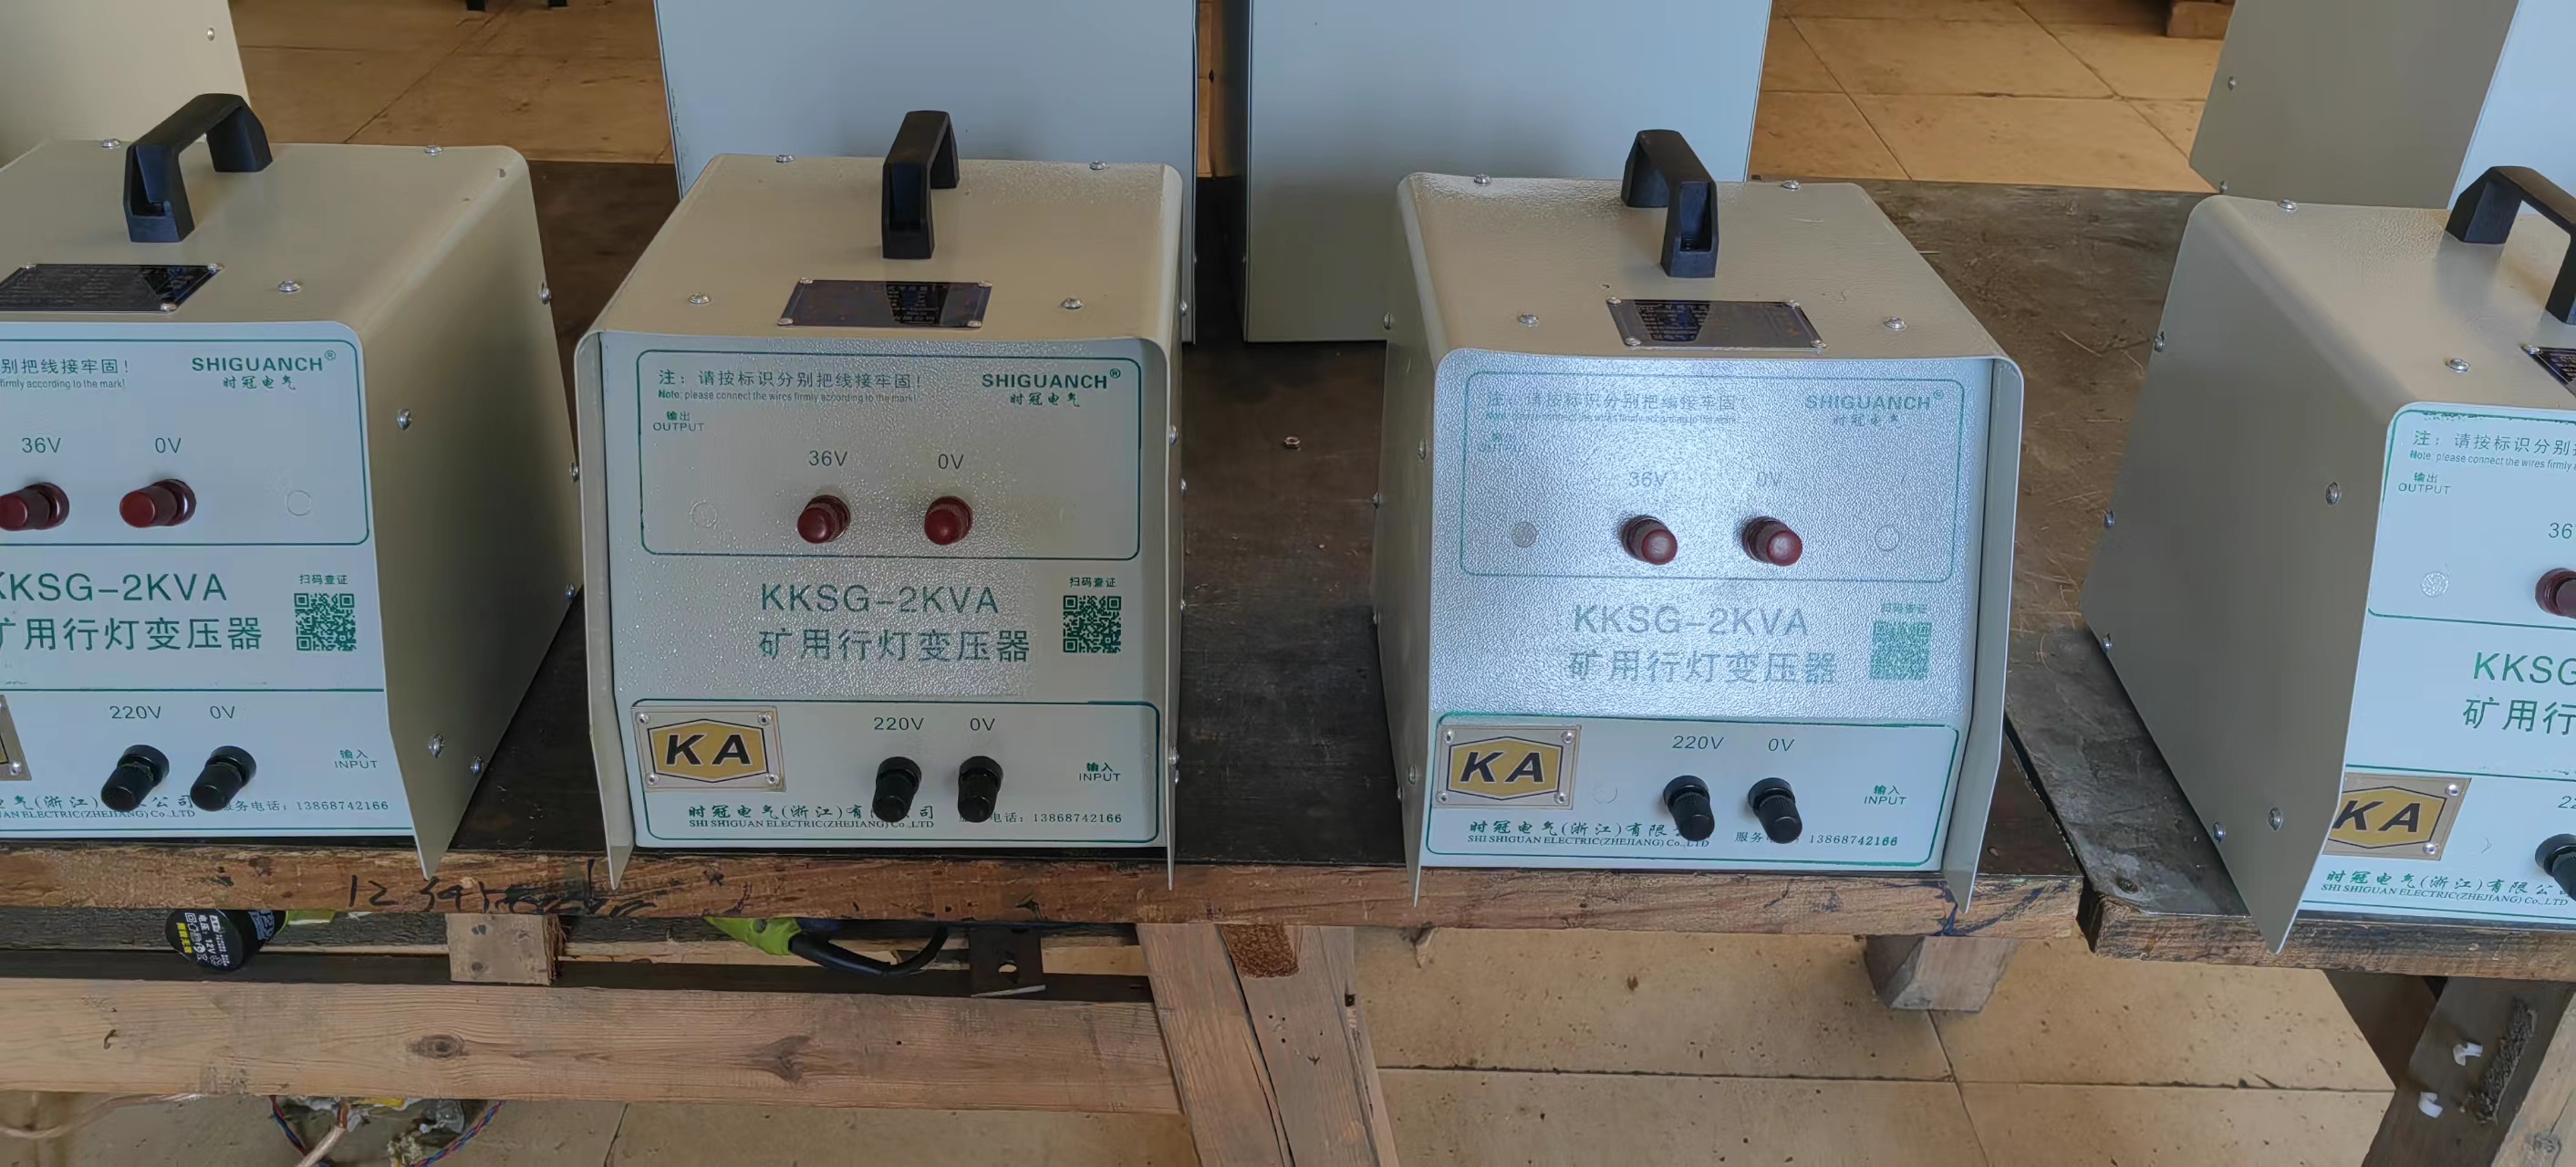 温州市KKSG-2KVA矿用行灯变压器厂家